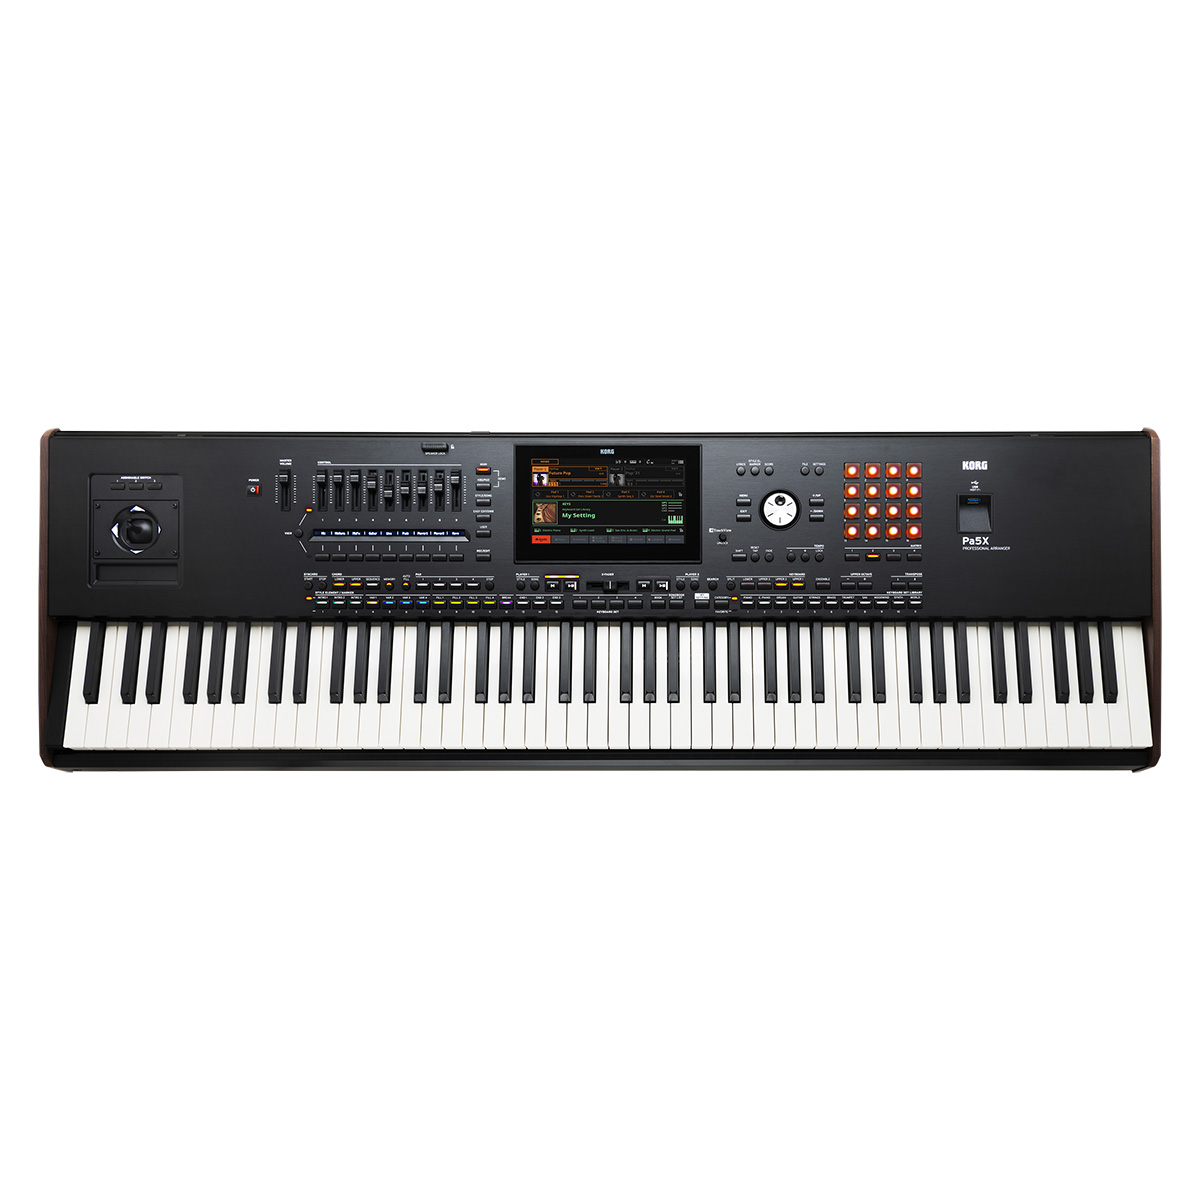 KORG Pa5X-88 アレンジャーキーボード 88鍵盤